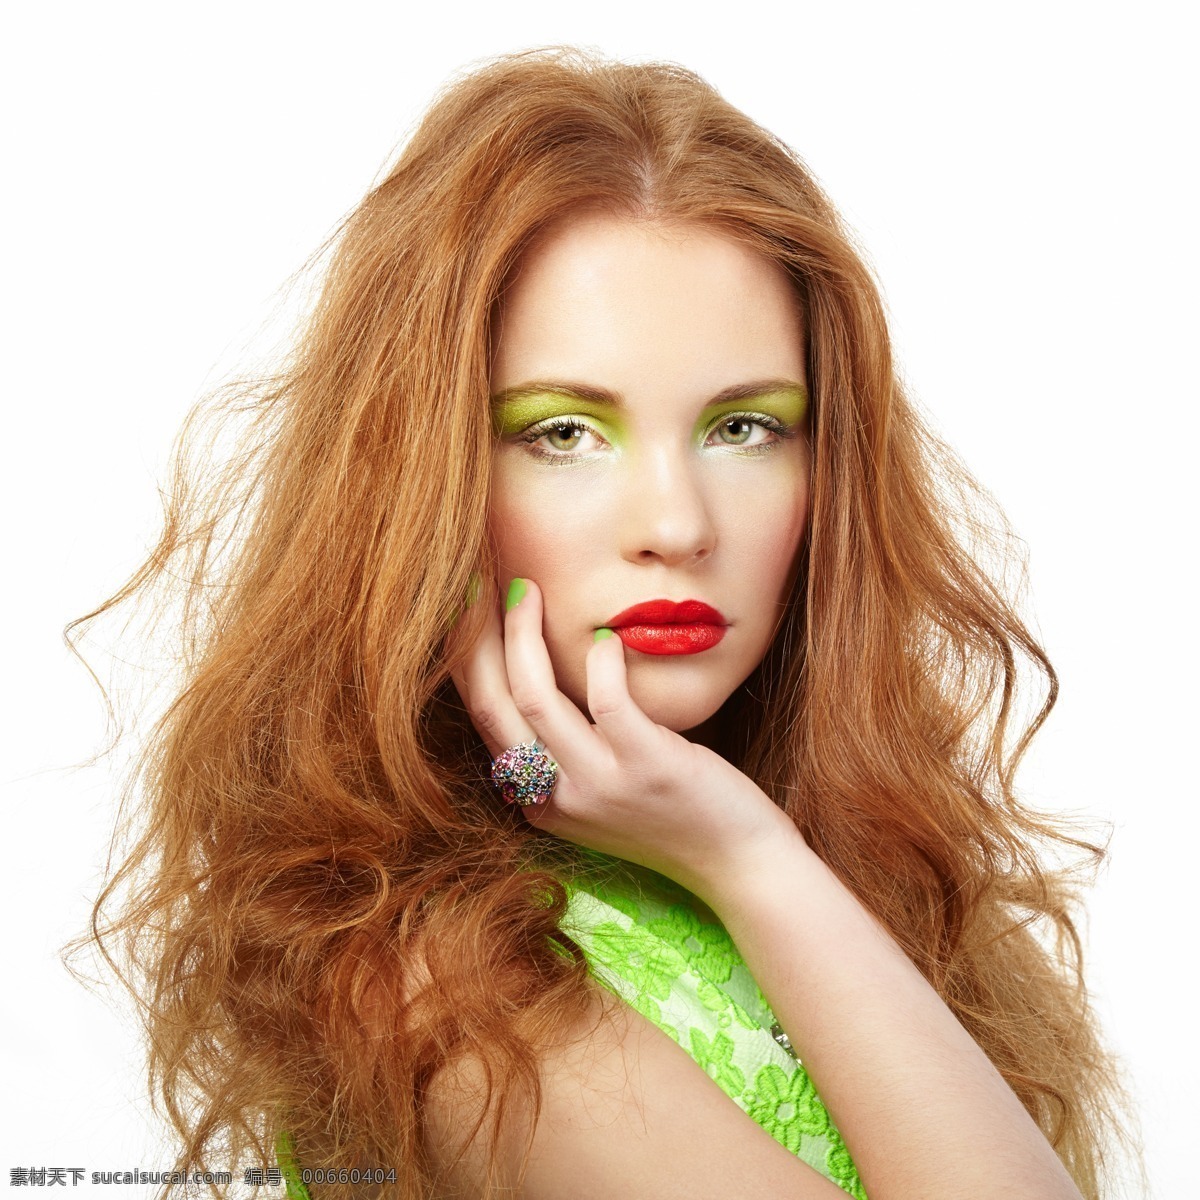 绿色 彩妆 美女图片 绿色彩妆 女人 女性 美女 人物 人物图片